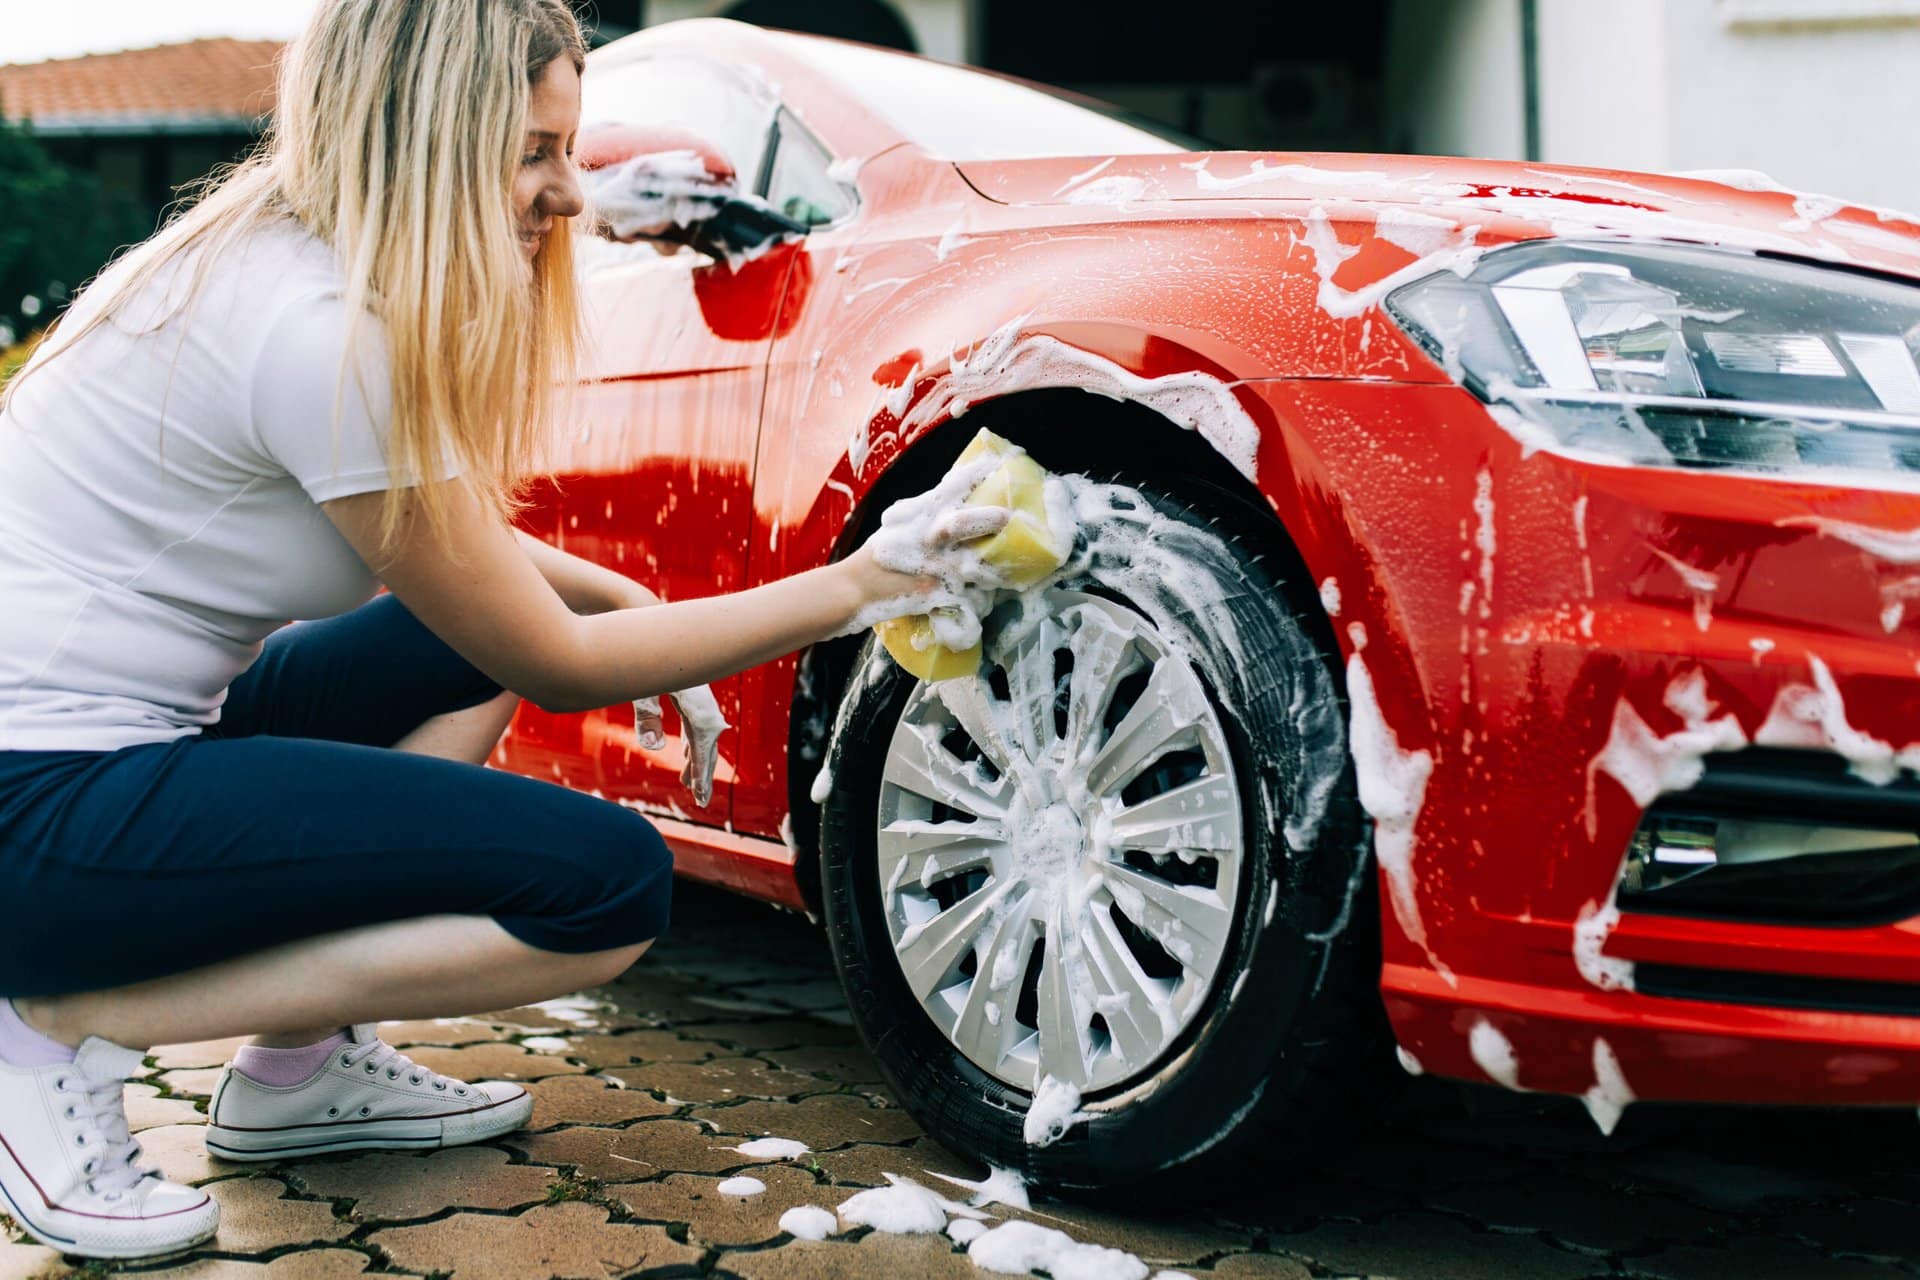 Comment laver votre voiture : 9 grosses erreurs à éviter shutterstock 1154258758 scaled